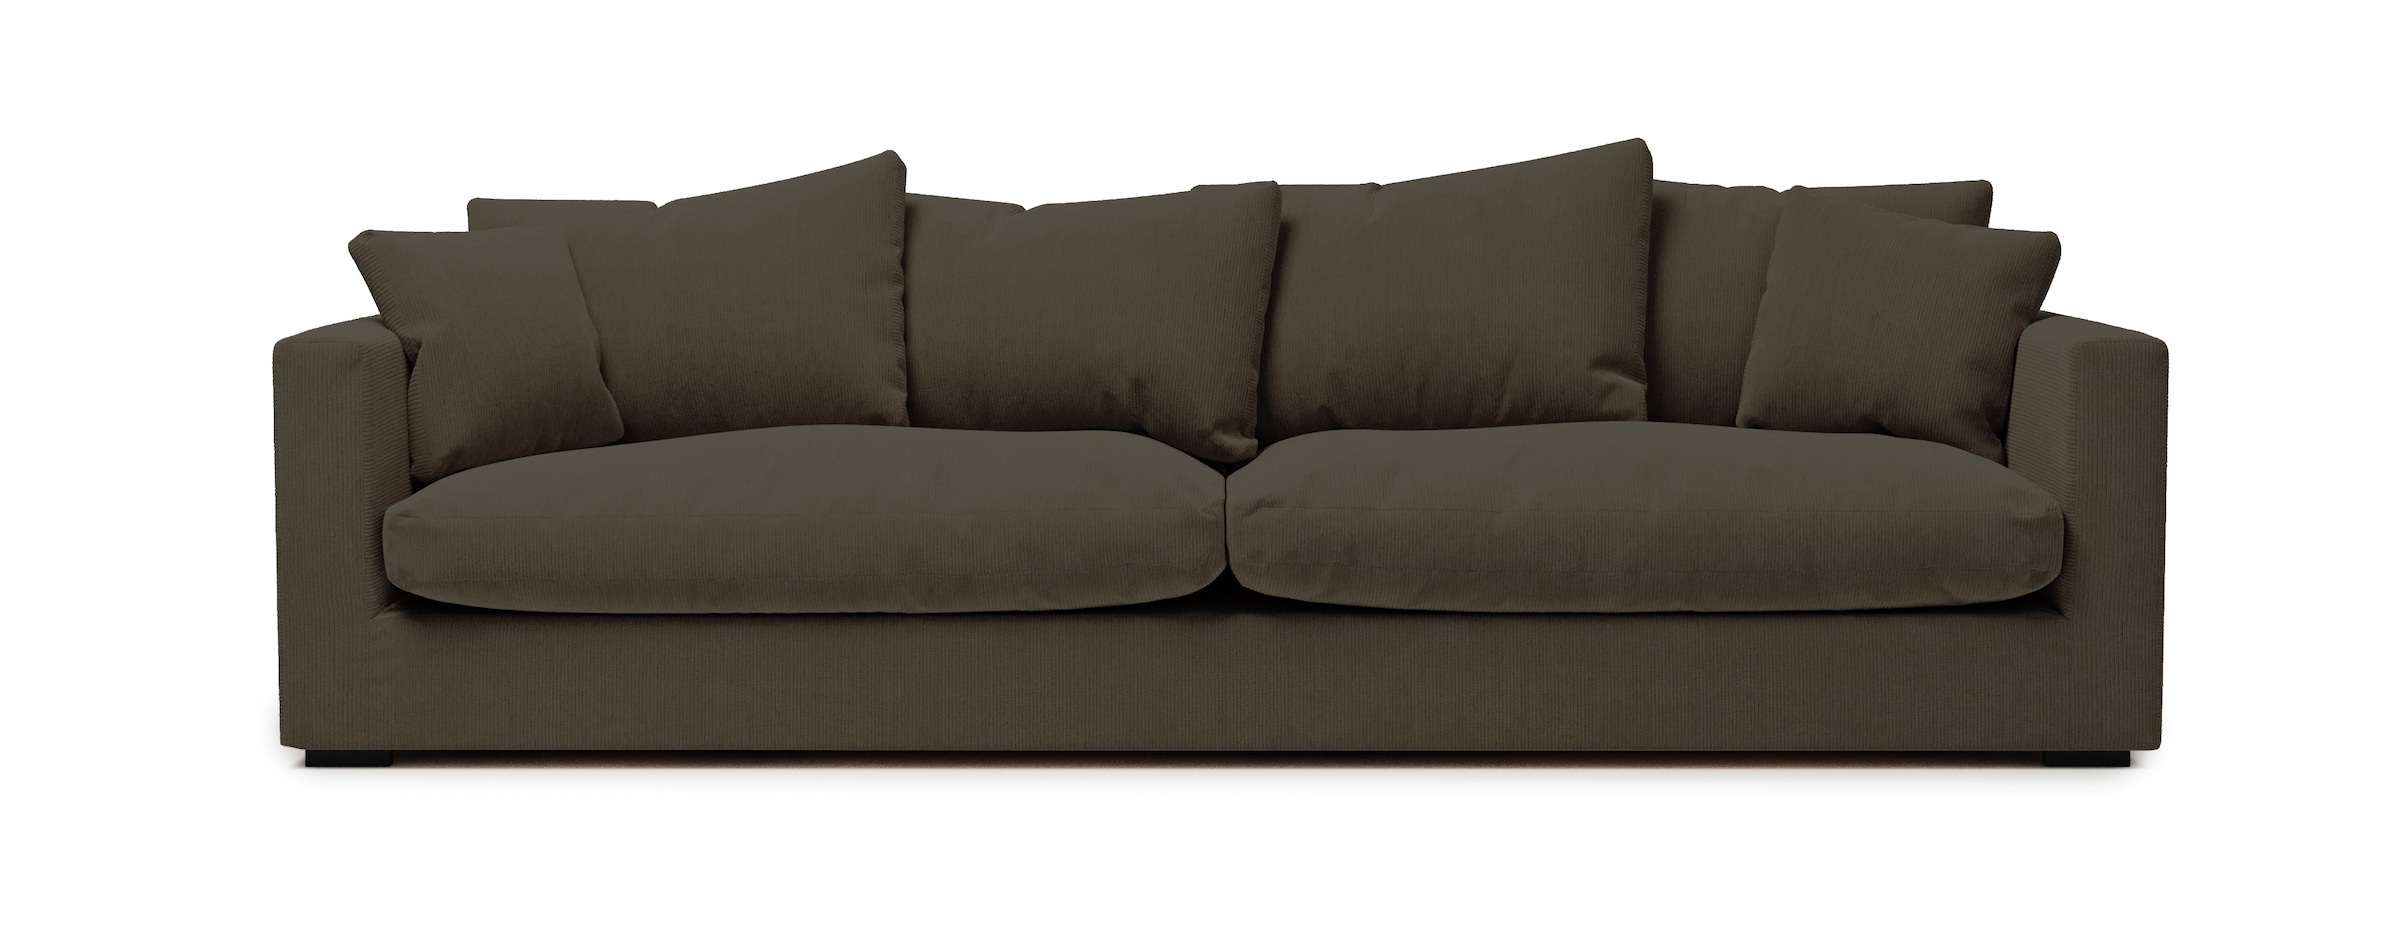 Big Sofas online kaufen Sofa bei Ultrabequemes | Big